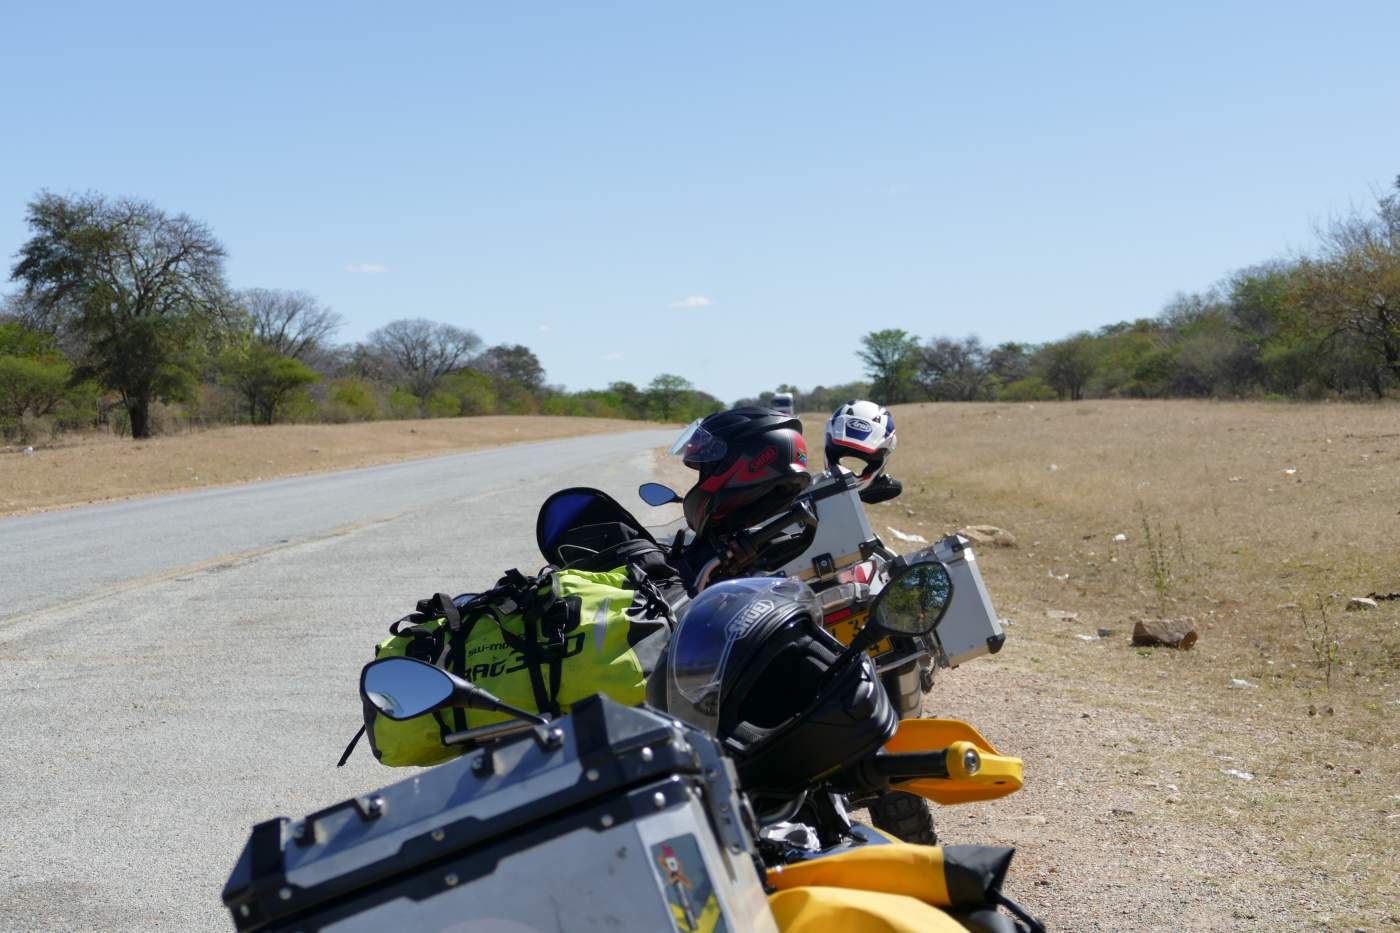 BMWs am Straßenrand in Botswana auf der Onroad Motorradreise durch das südliche und östliche Afrika